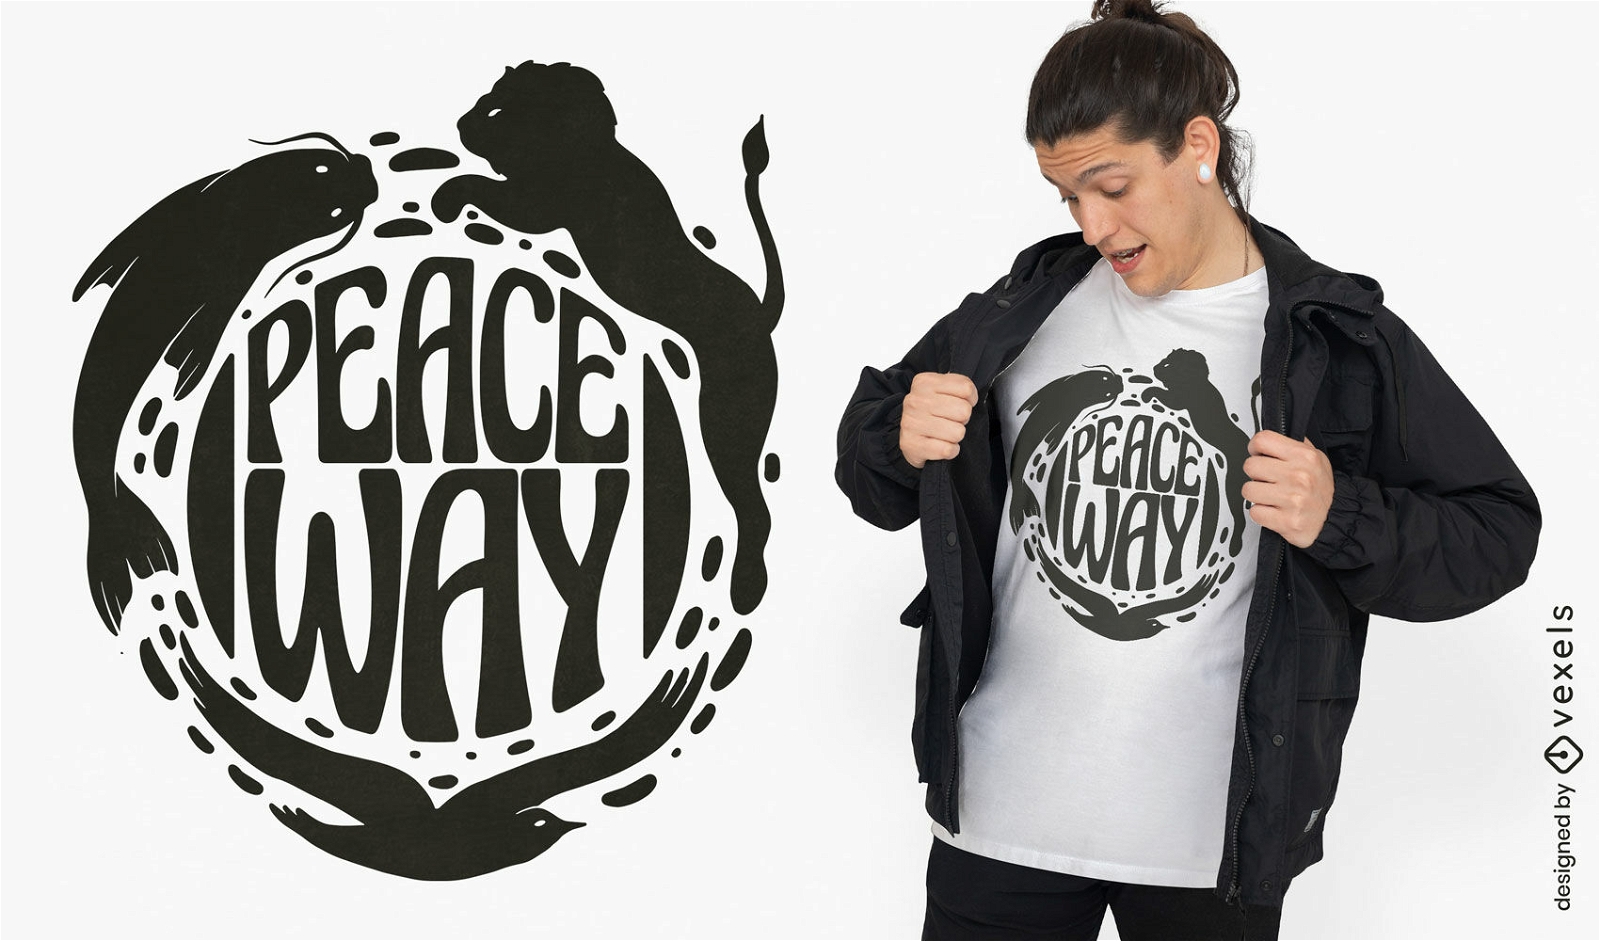 Diseño de camiseta de camino de la paz.